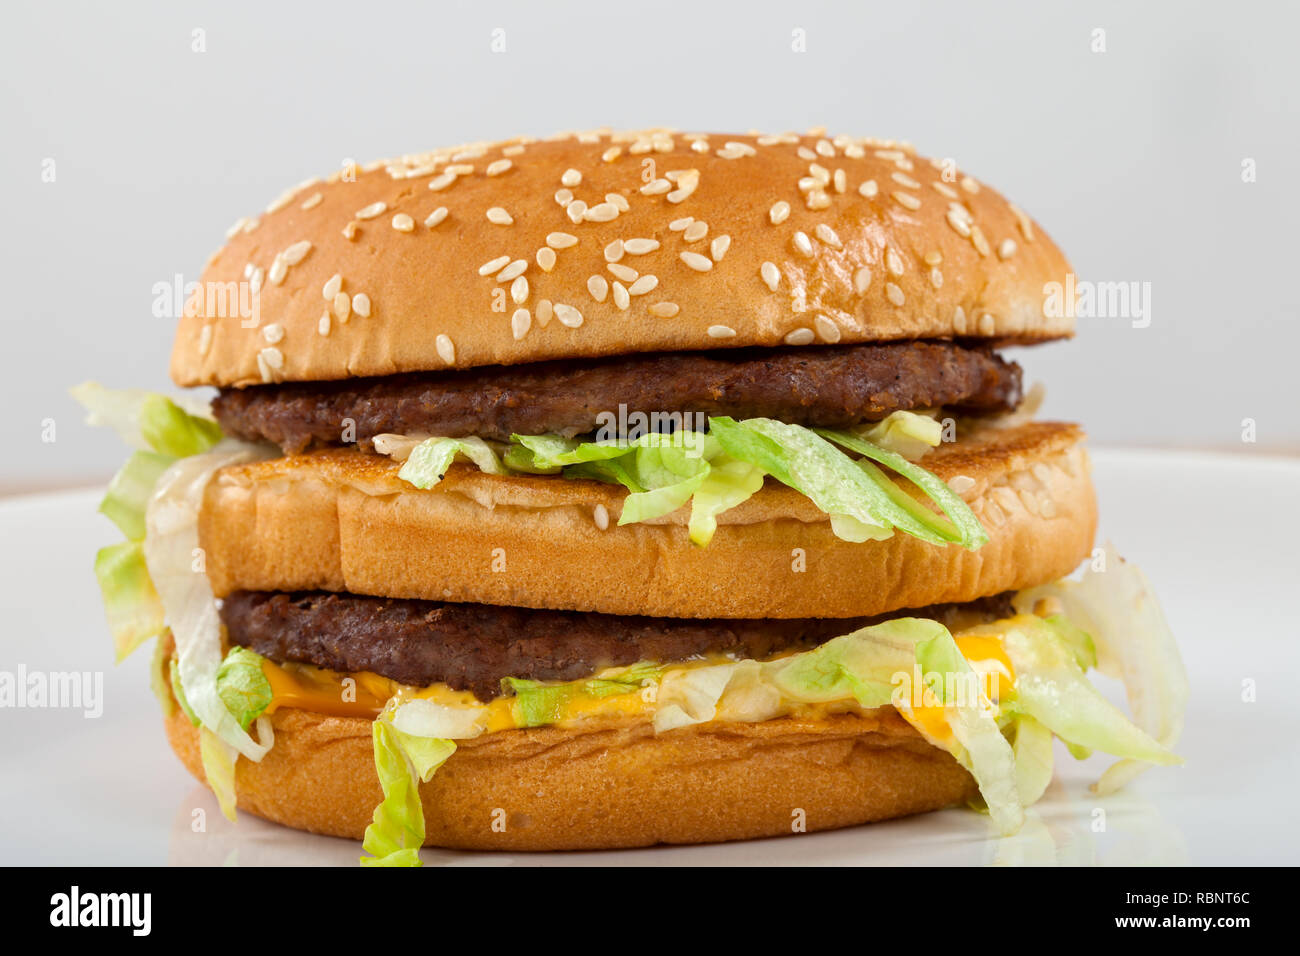 In Der Nahe Bild Von Einem Leckeren Double Cheeseburger Mit Rindfleisch Cheddar Salat In Einem Sesambrotchen Stockfotografie Alamy